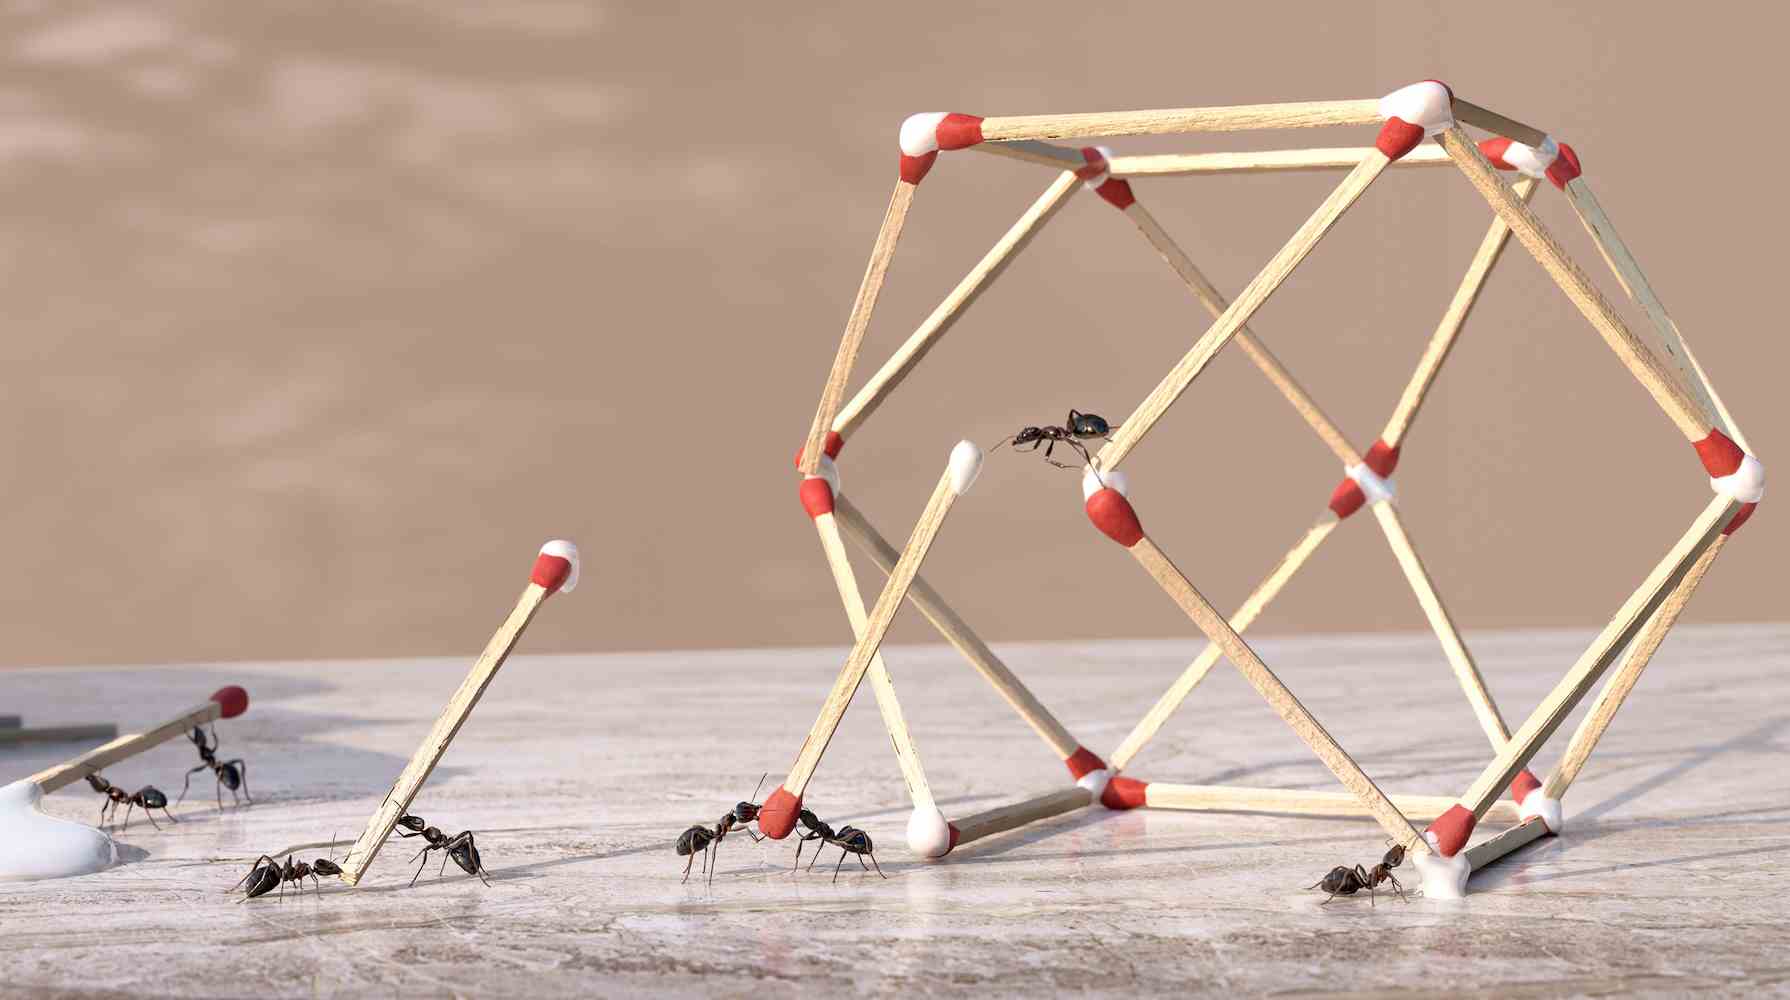 Eine Gruppe von Ameisen, die als Team zusammenarbeiten, um aus Klebstoff und Streichhölzern eine dreidimensionale geometrische Skulptur zu formen.  Die Ameisen tauchen Enden von Streichhölzern in Klebstoff, der aus einer Klebstoffflasche tropft, und platzieren sie in Position, um die Form auf einer Marmorarbeitsplatte zu formen.